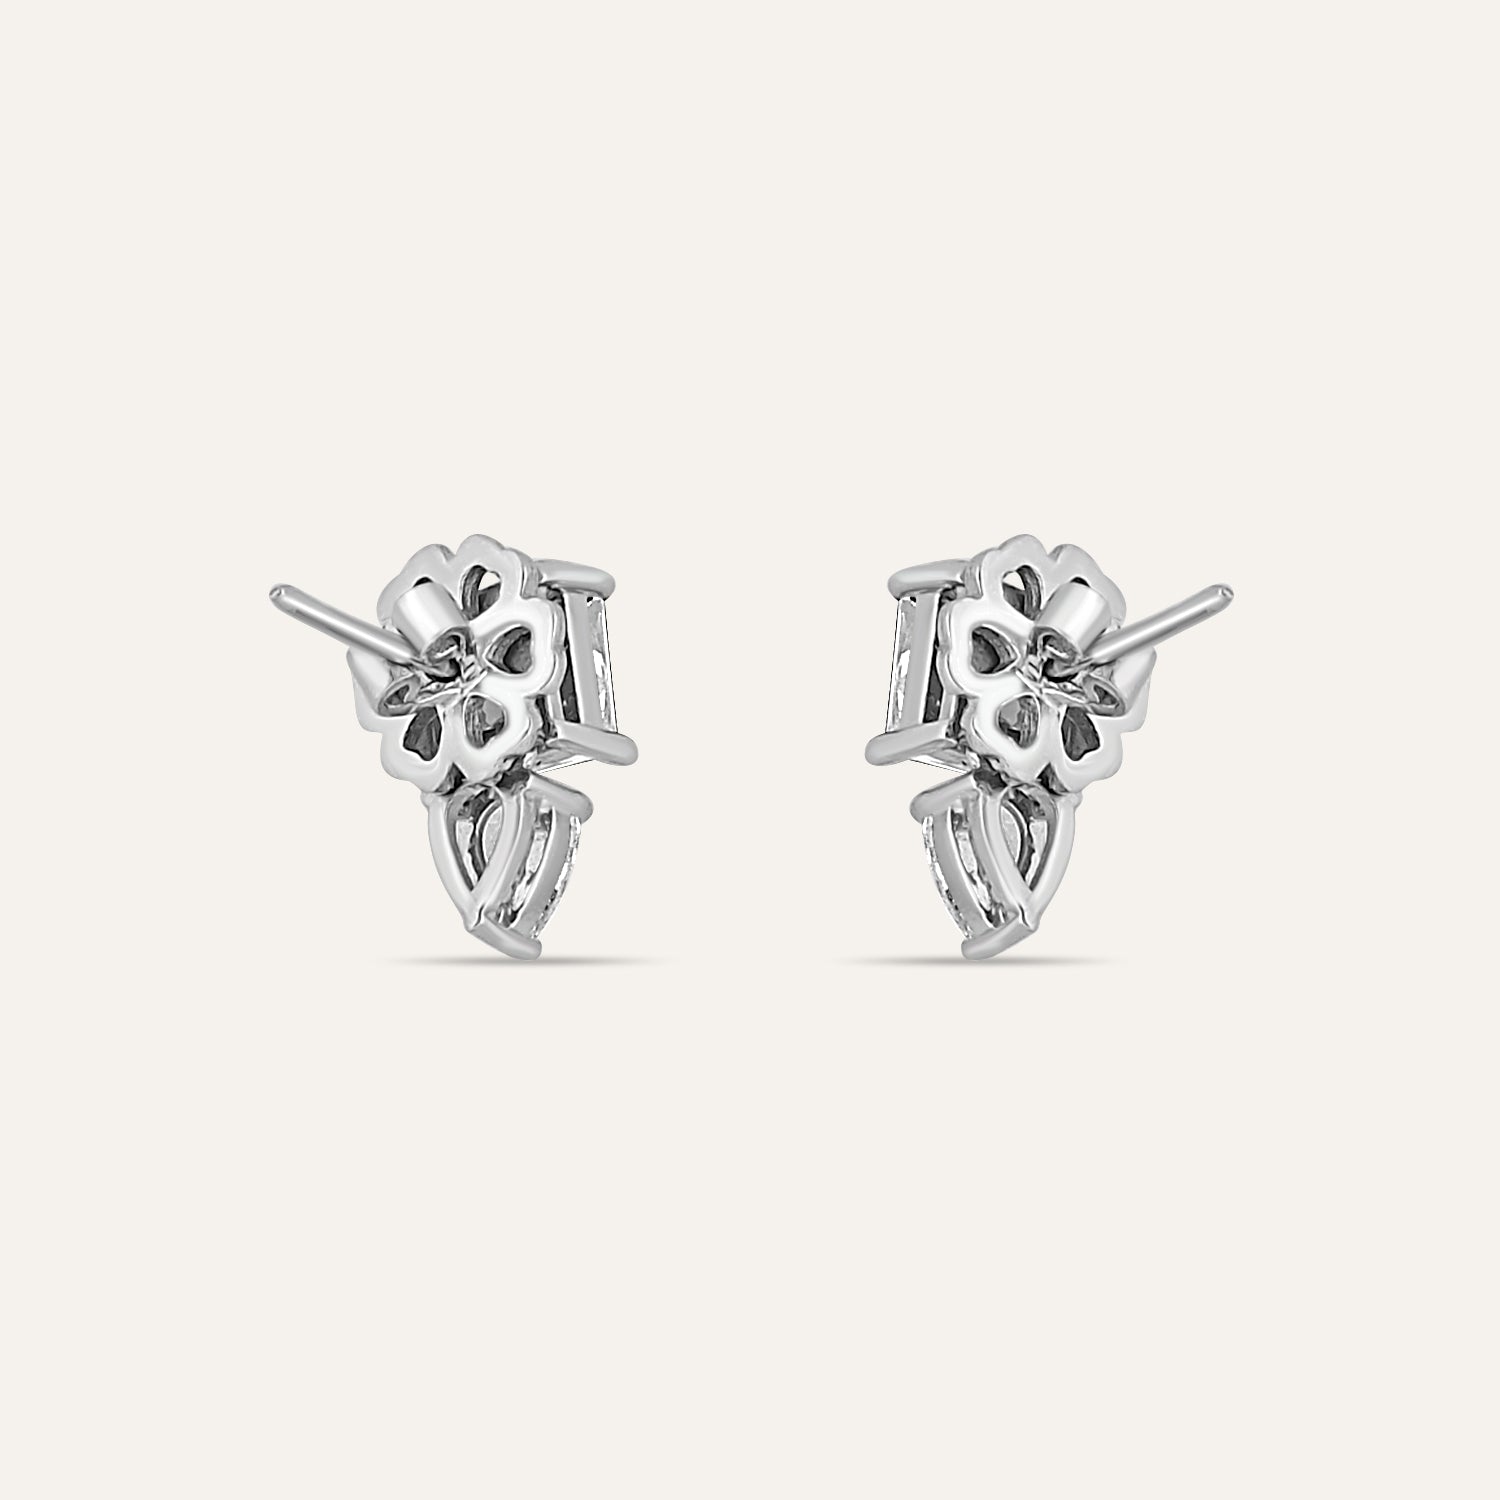 jewelry set online - Silver Earrings